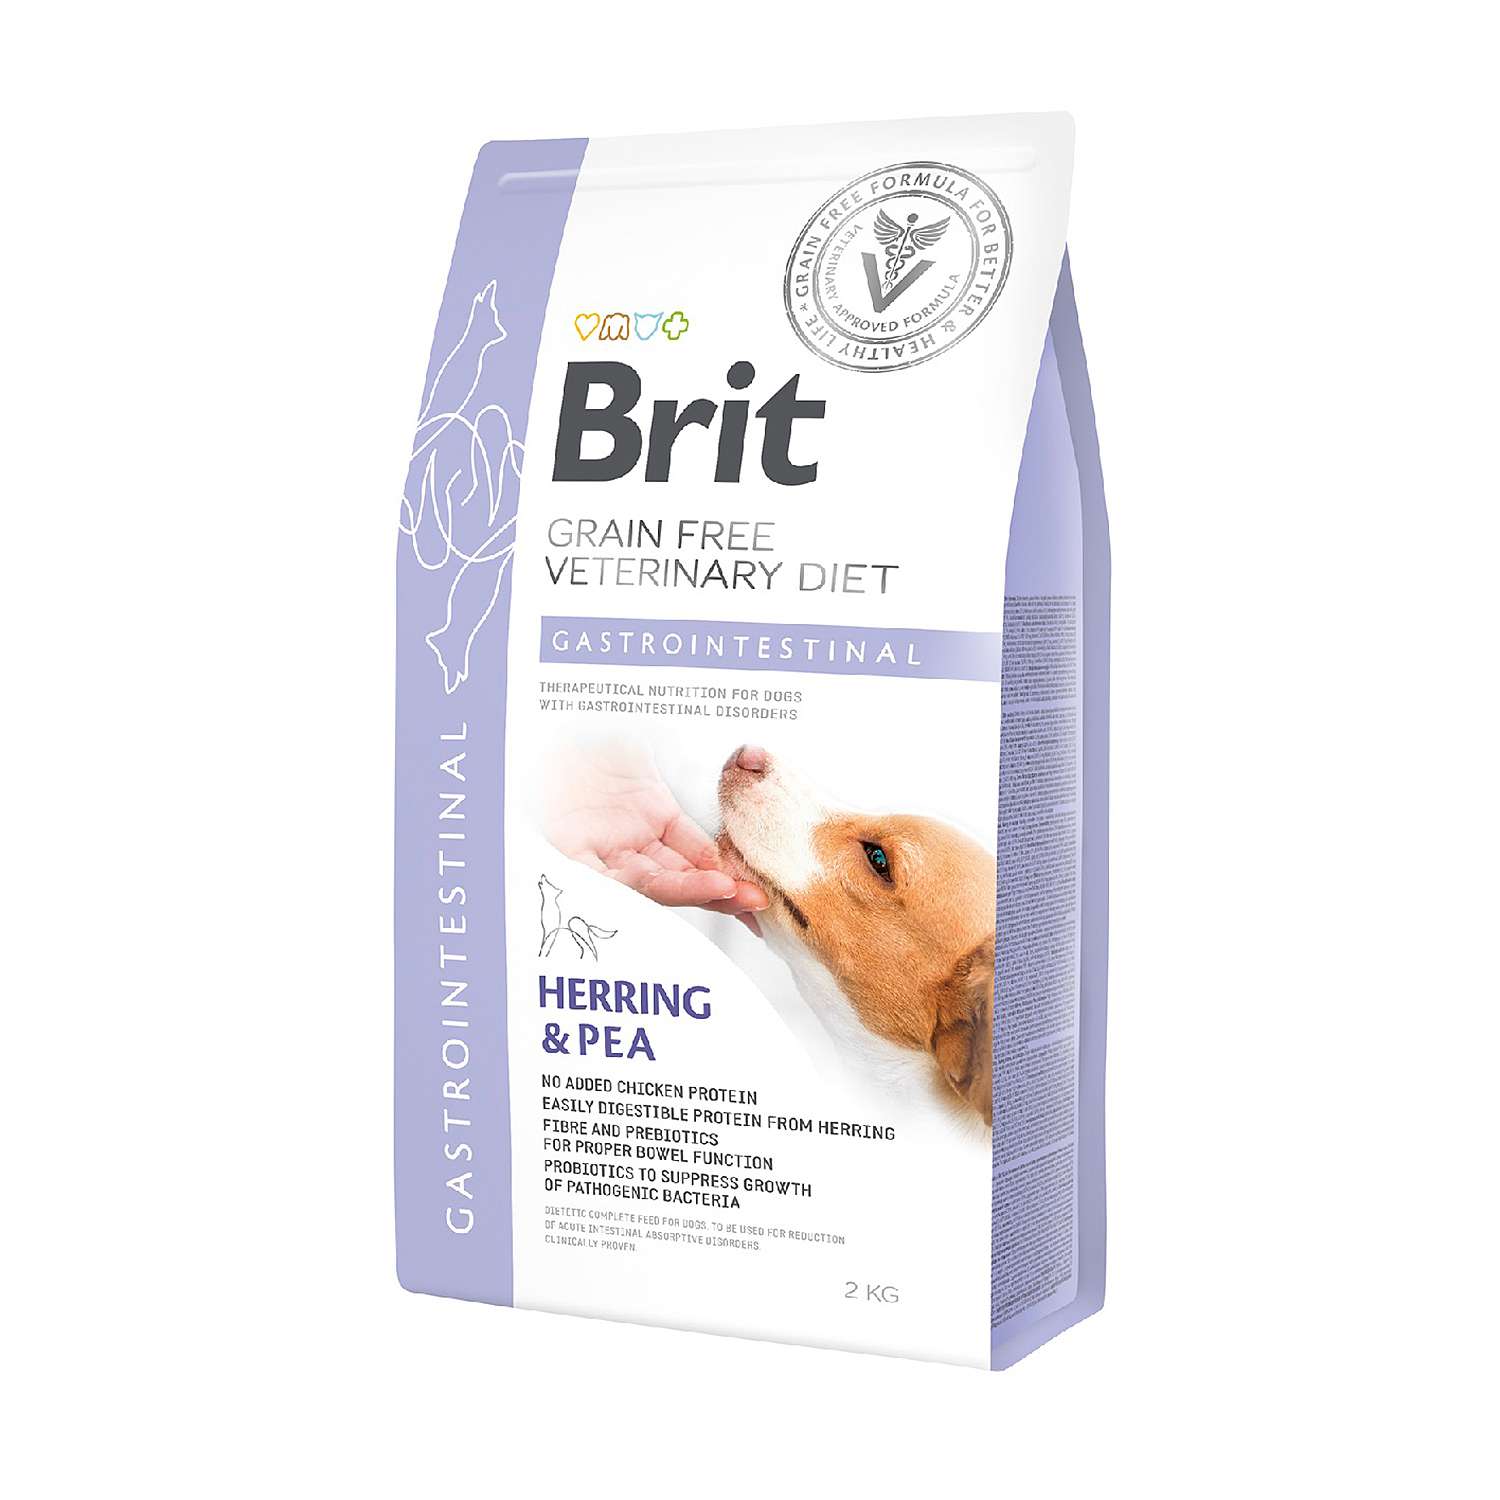 Корм для собак Brit 2кг Veterinary Diet Gastrointestinal беззерновой сельдь - фото 1